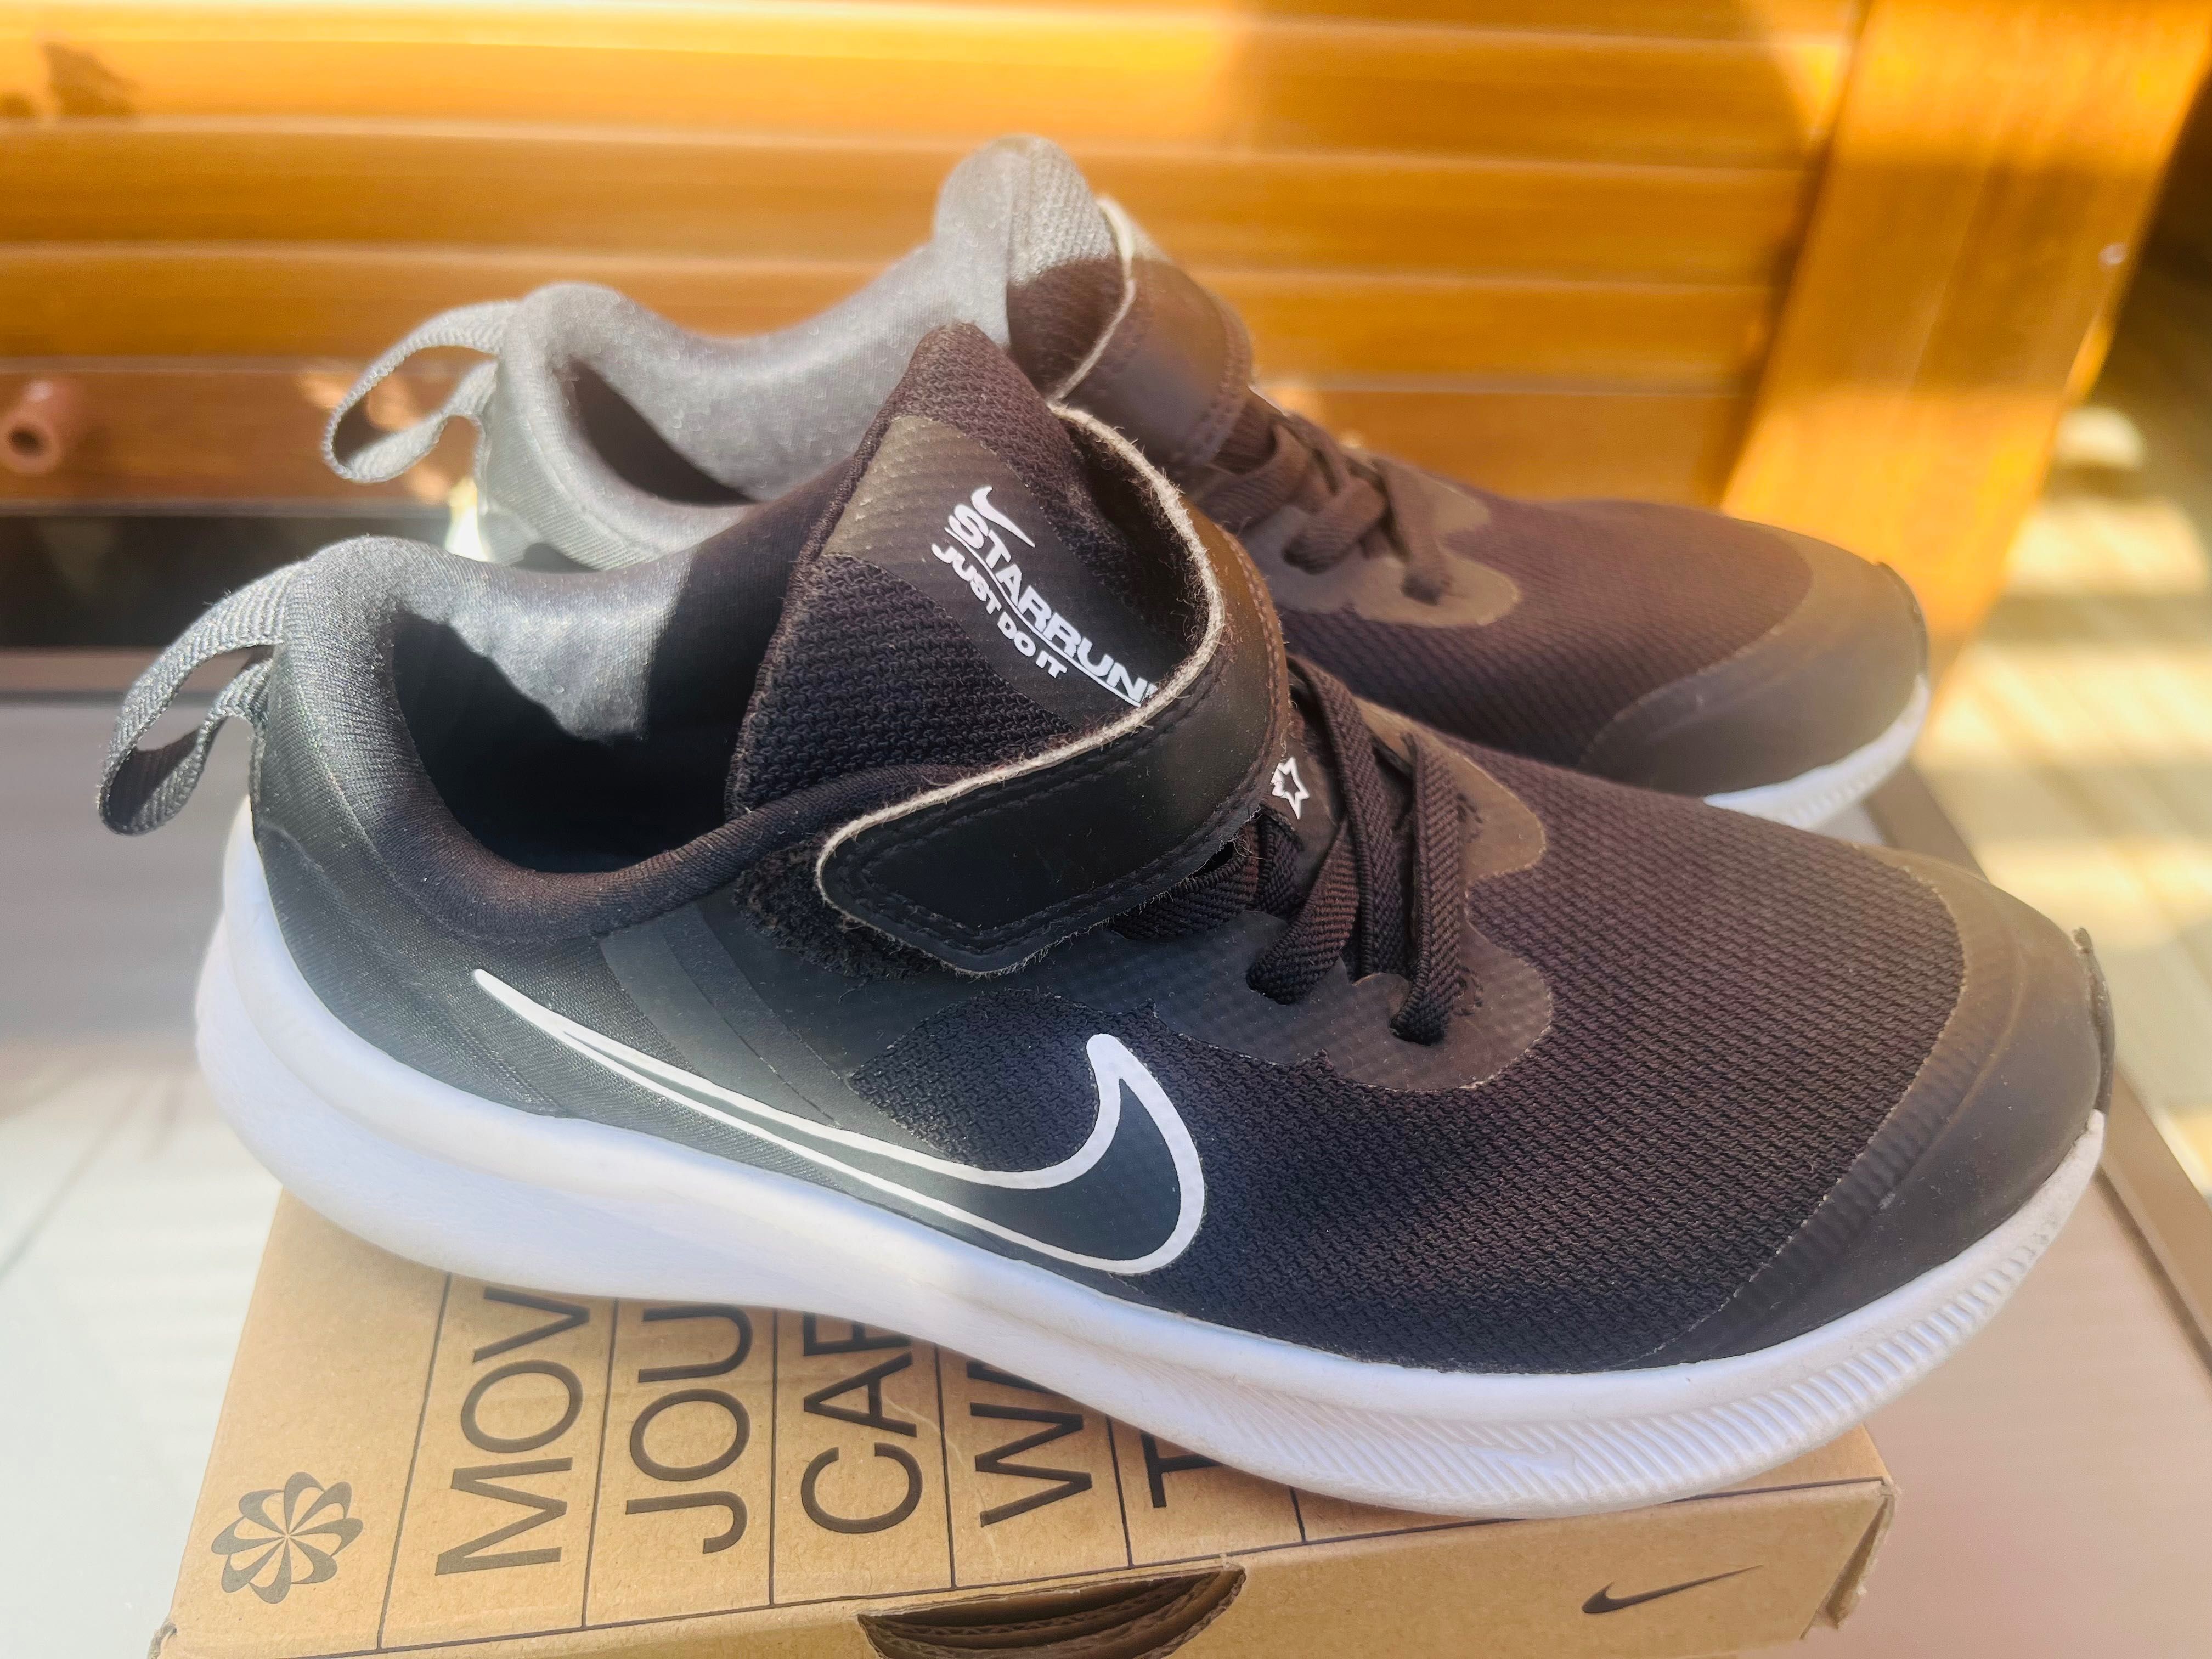 Nike Lekkie czarne buty/adidasy na rzep rozmiar 31, wkładka 20,5cm